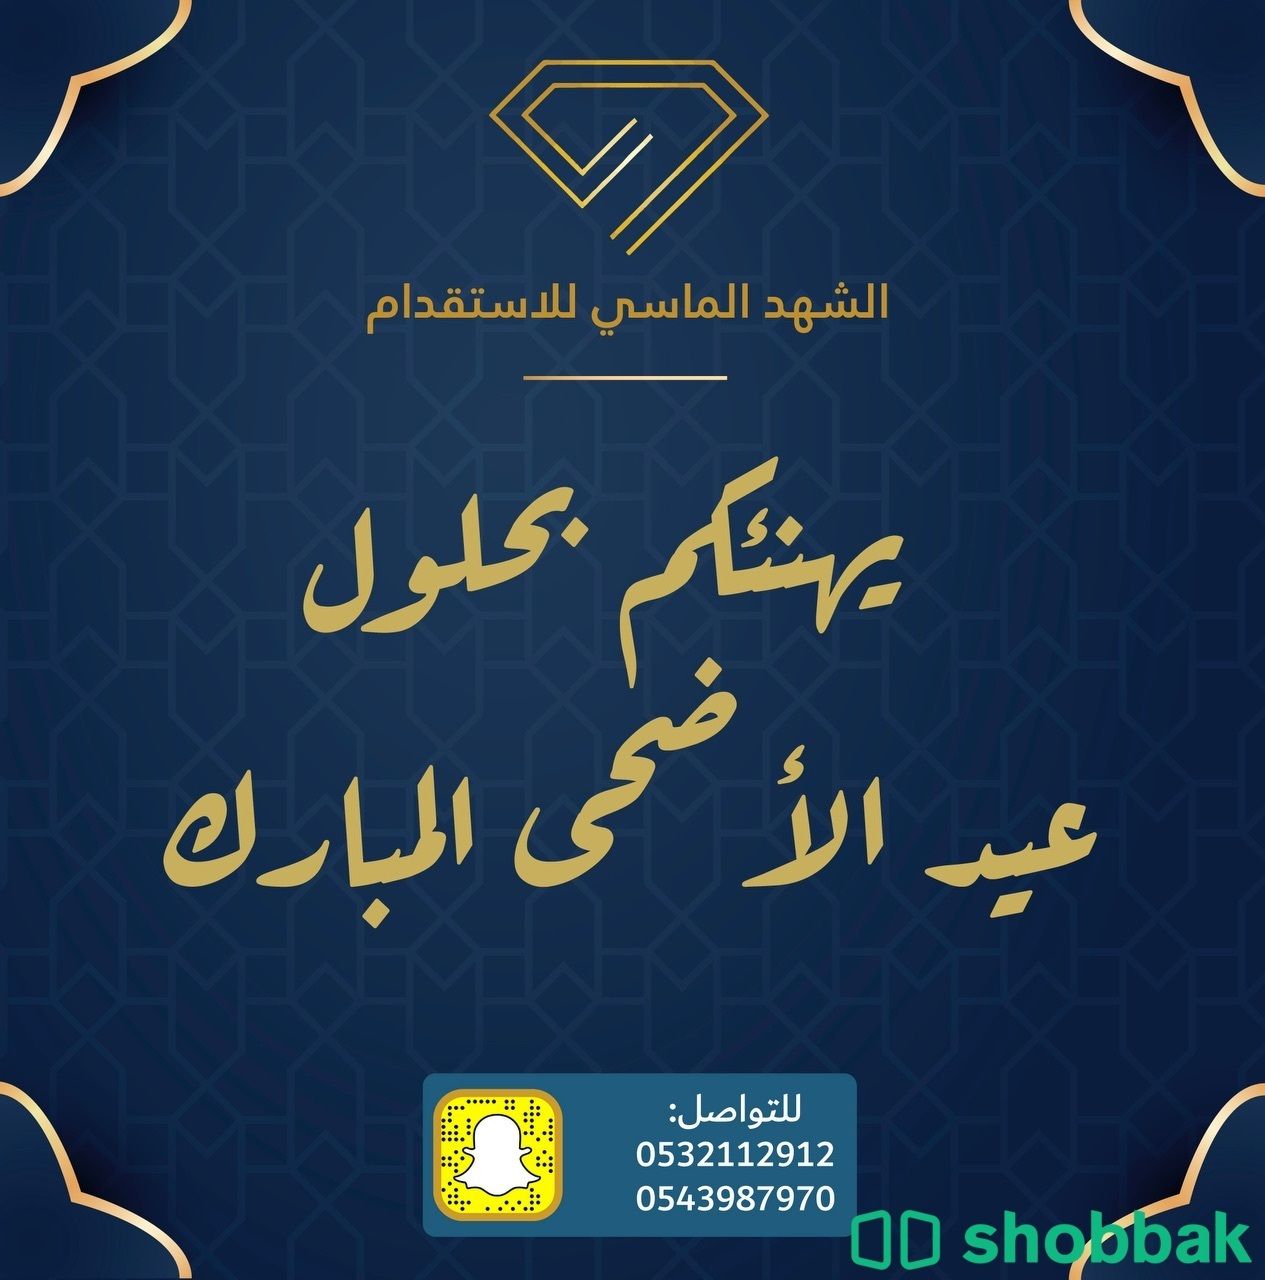 تصميم بوسترات - سيرك ذاتية - كروت دعوة Shobbak Saudi Arabia